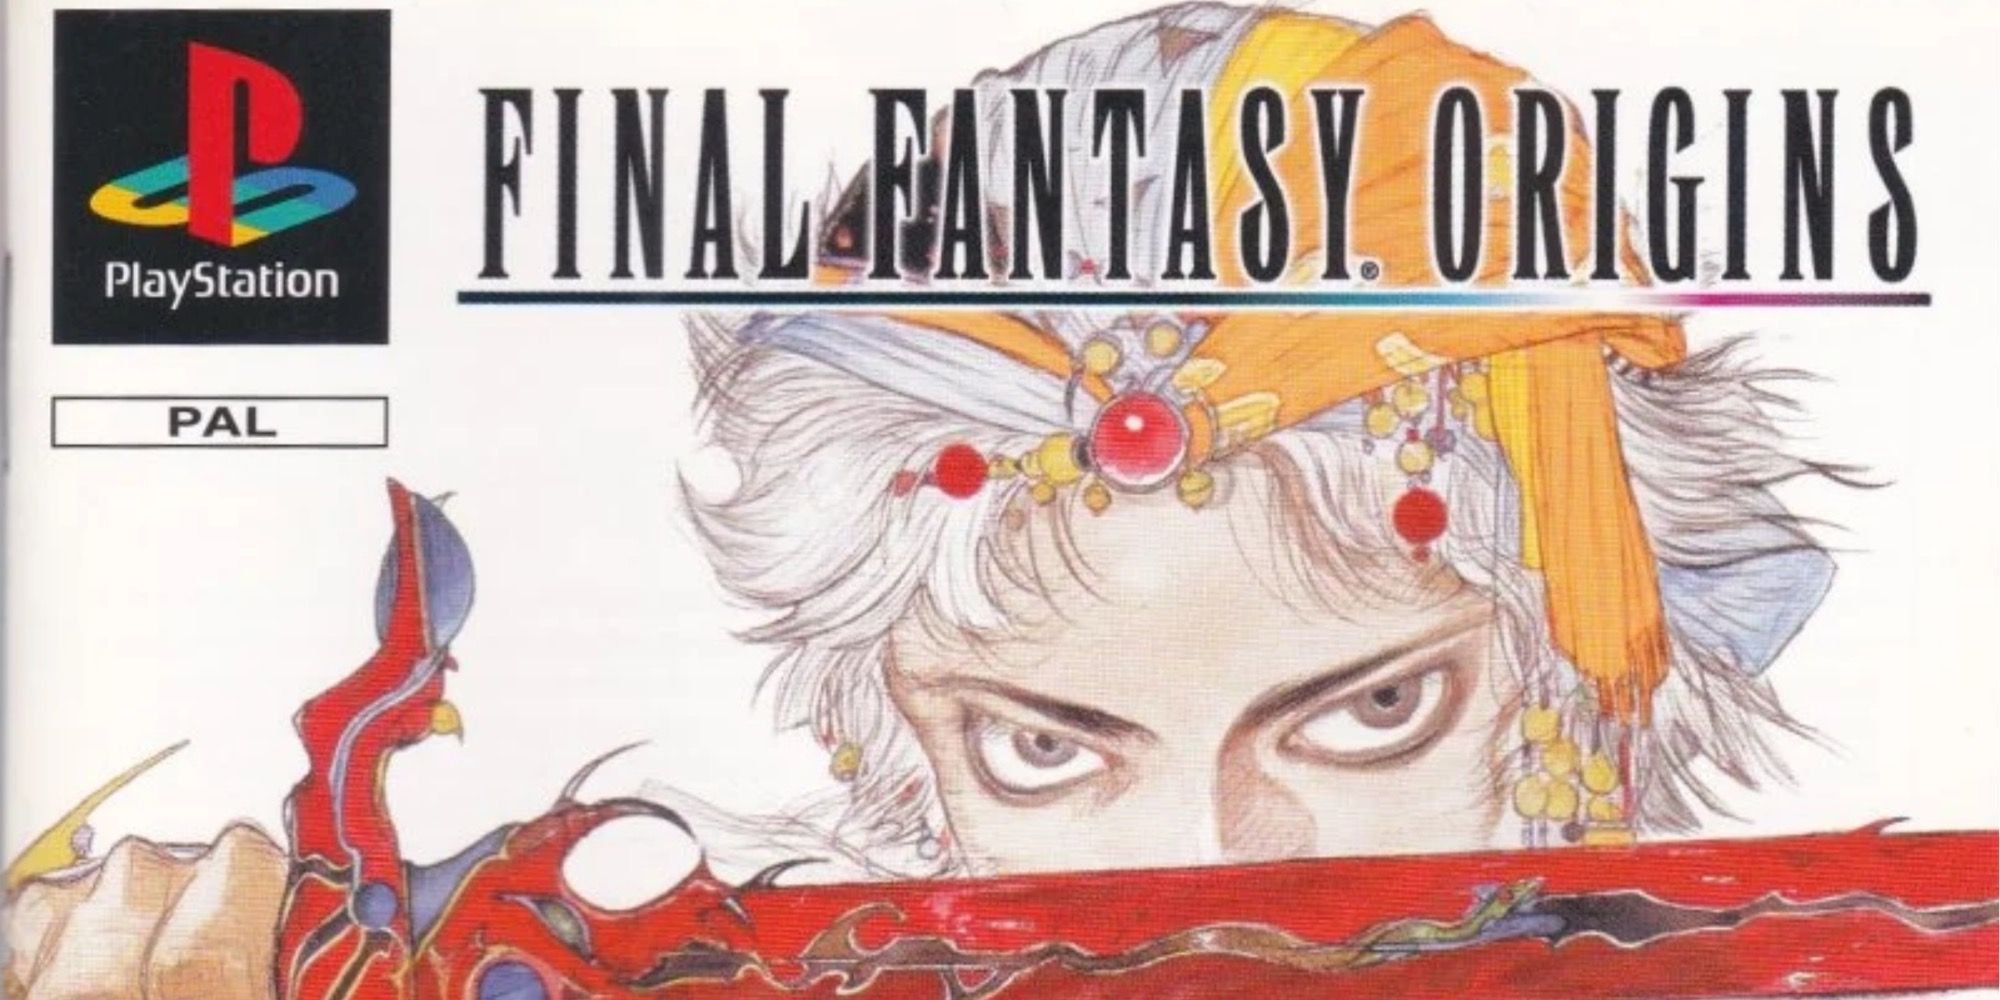 The box art for Final Fantasy Origins